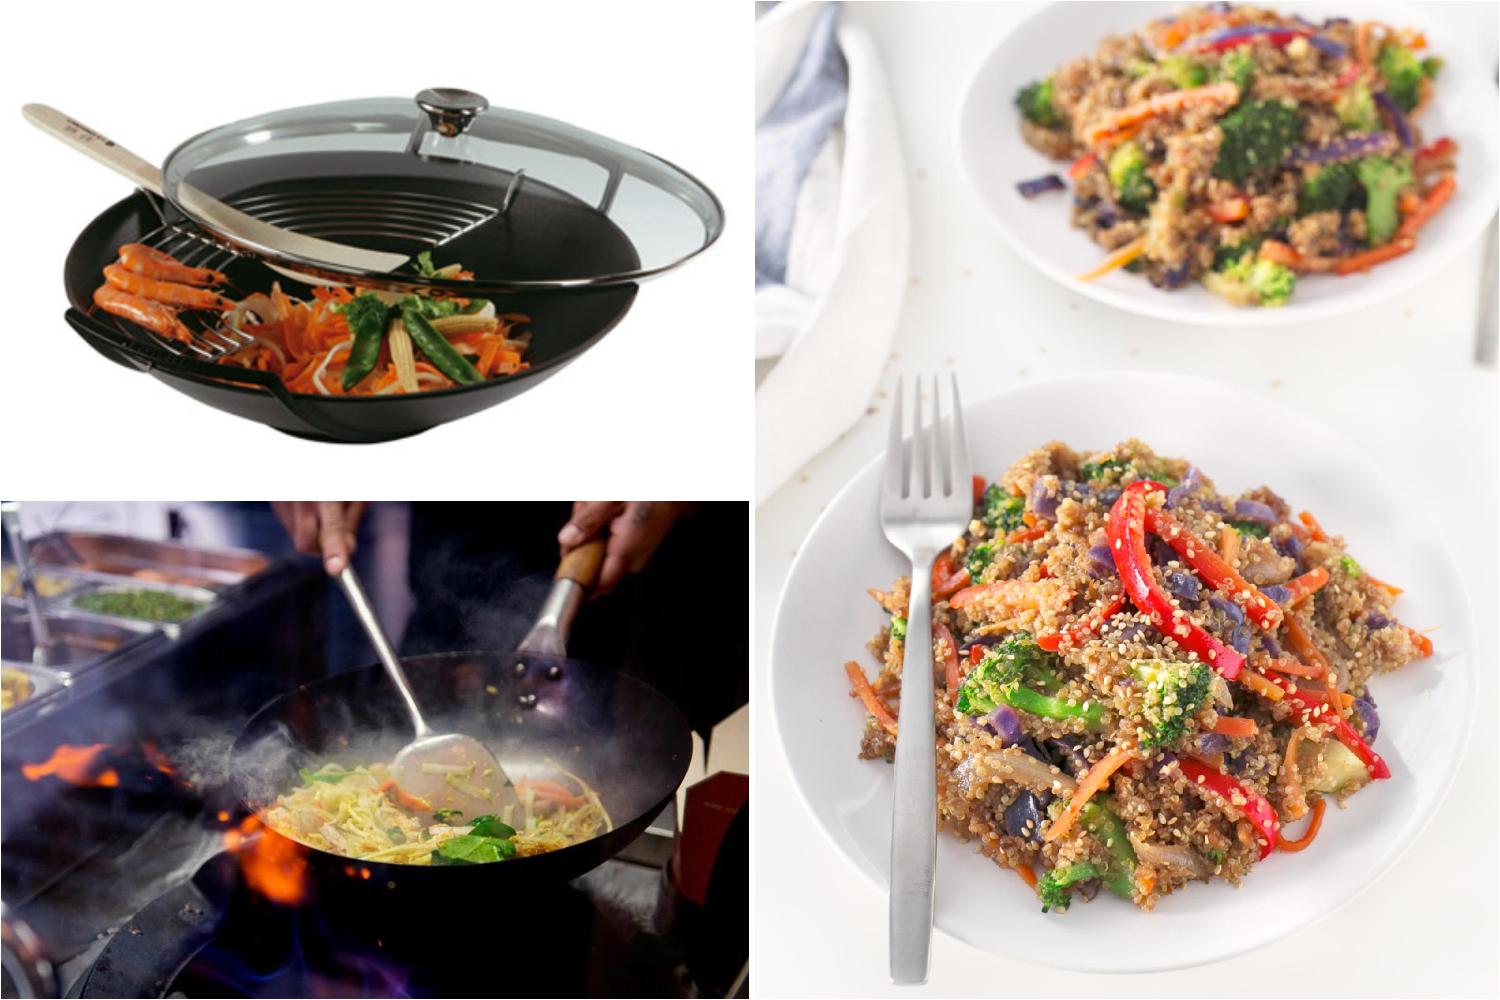 Recetas para cocinar con Wok: Verduras, carne, salteados chinos